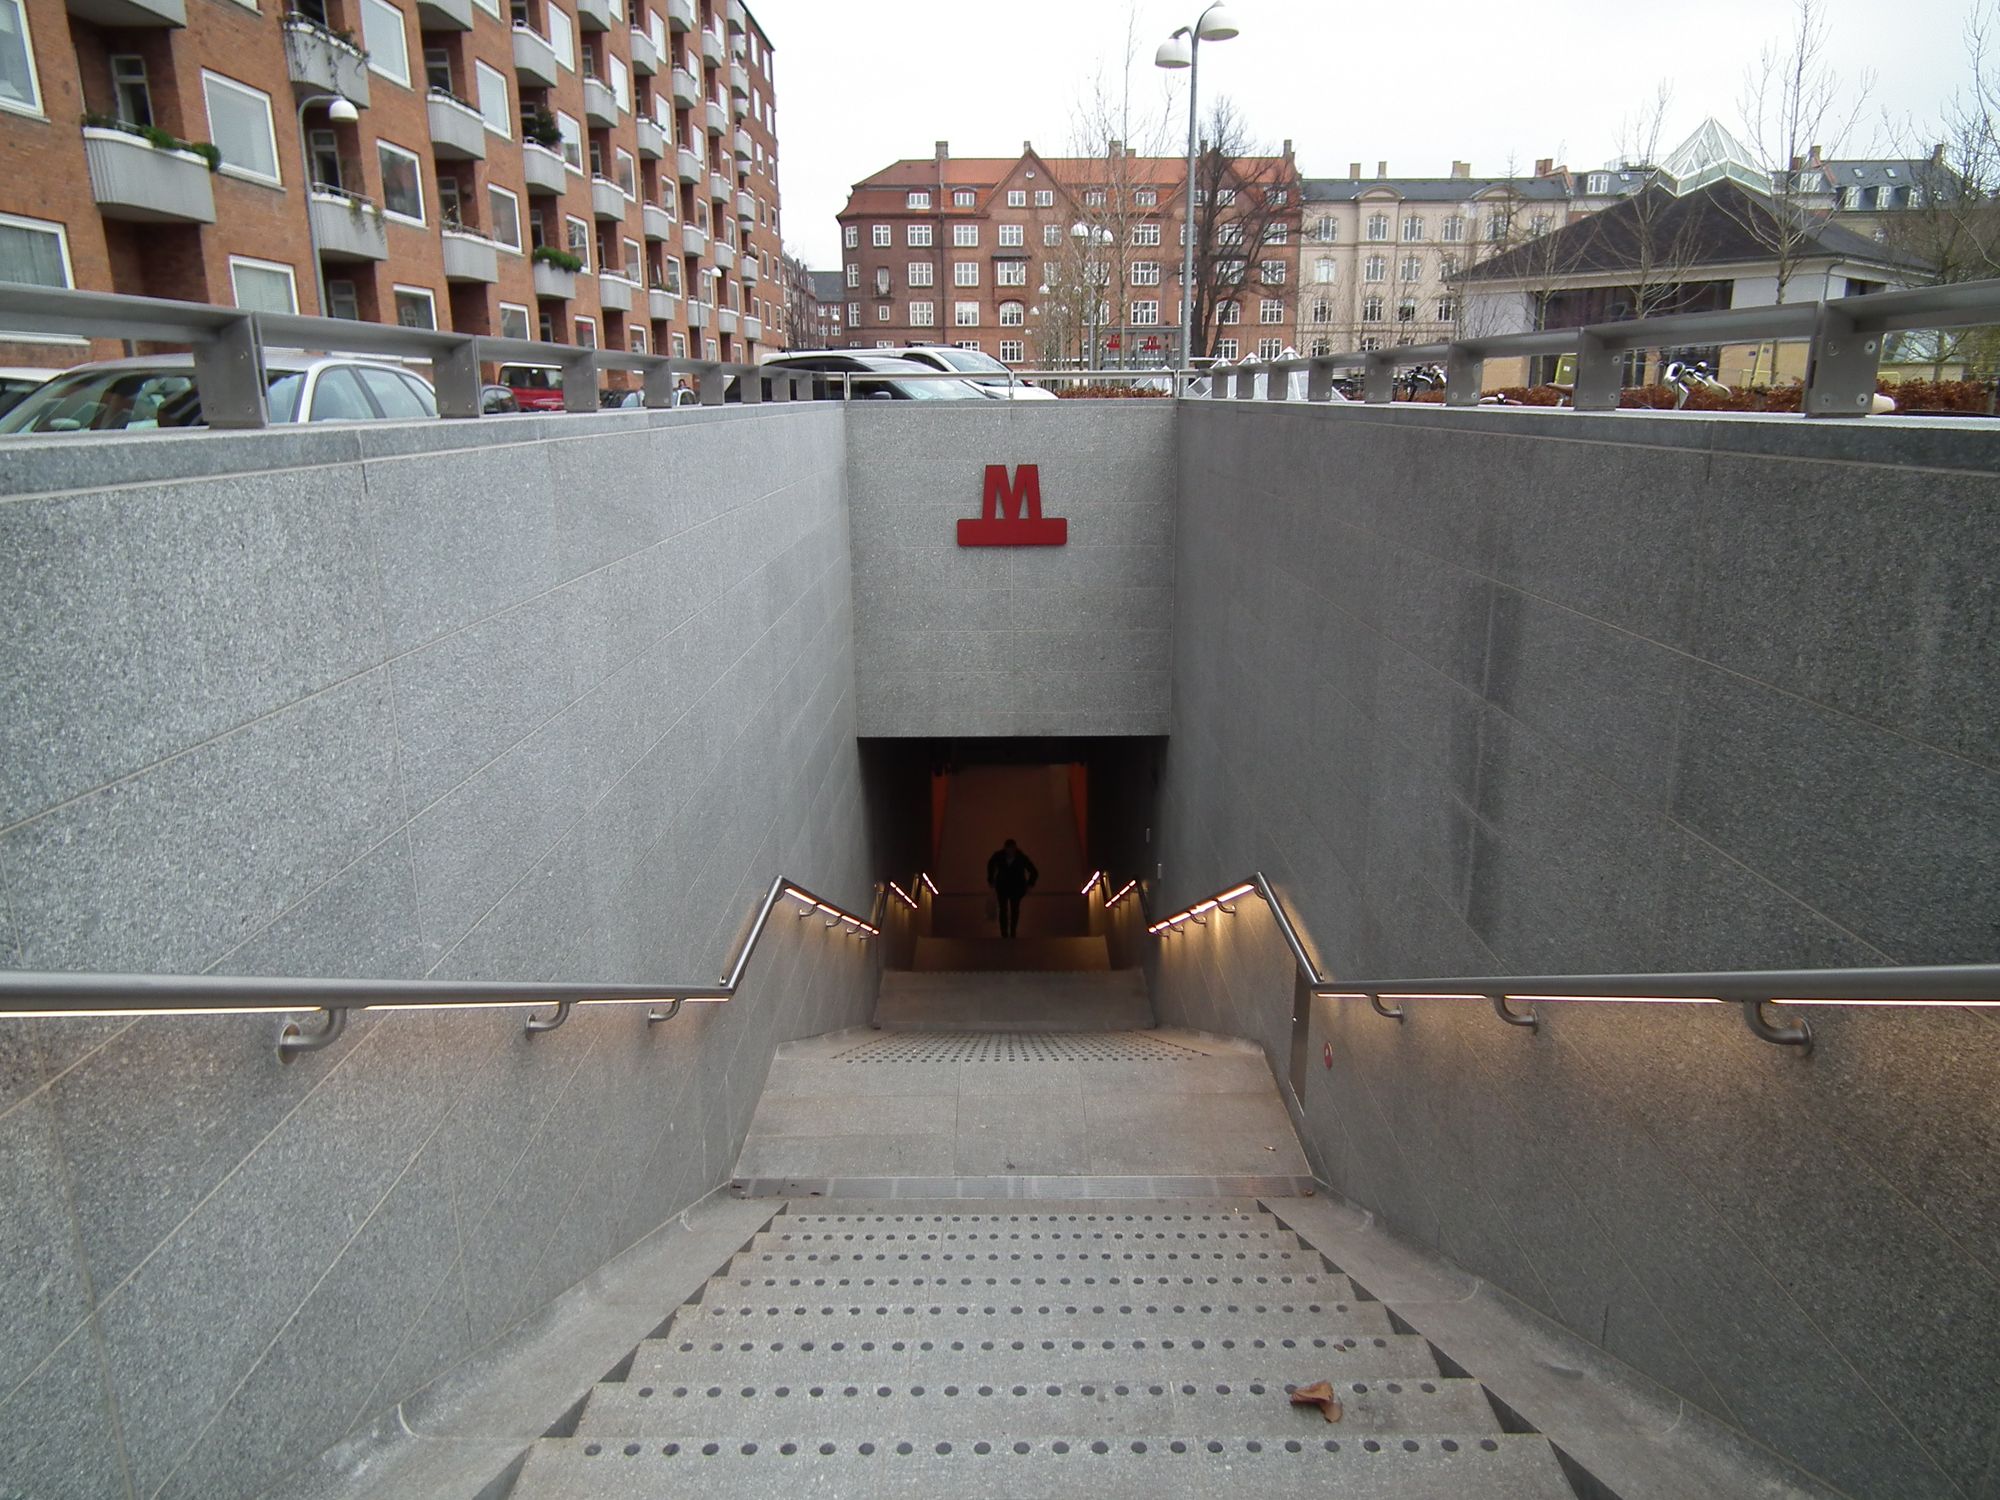 Copenhagen Metro: M3 